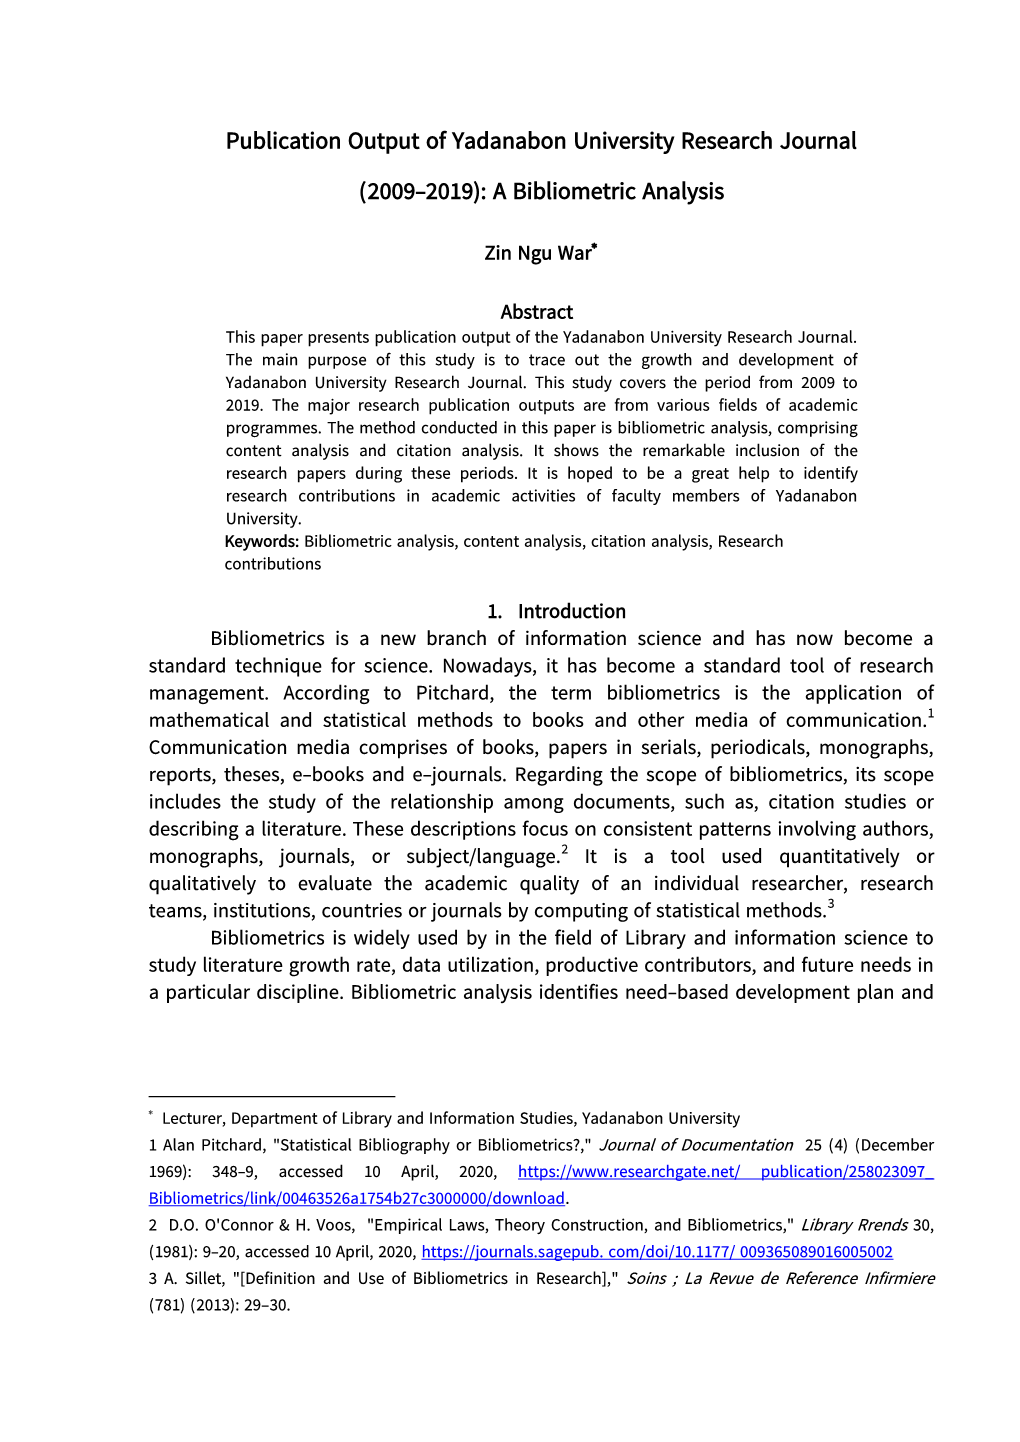 Publication Output of Yadanabon University Research Journal (2009-2019): a Bibliometric Analysis